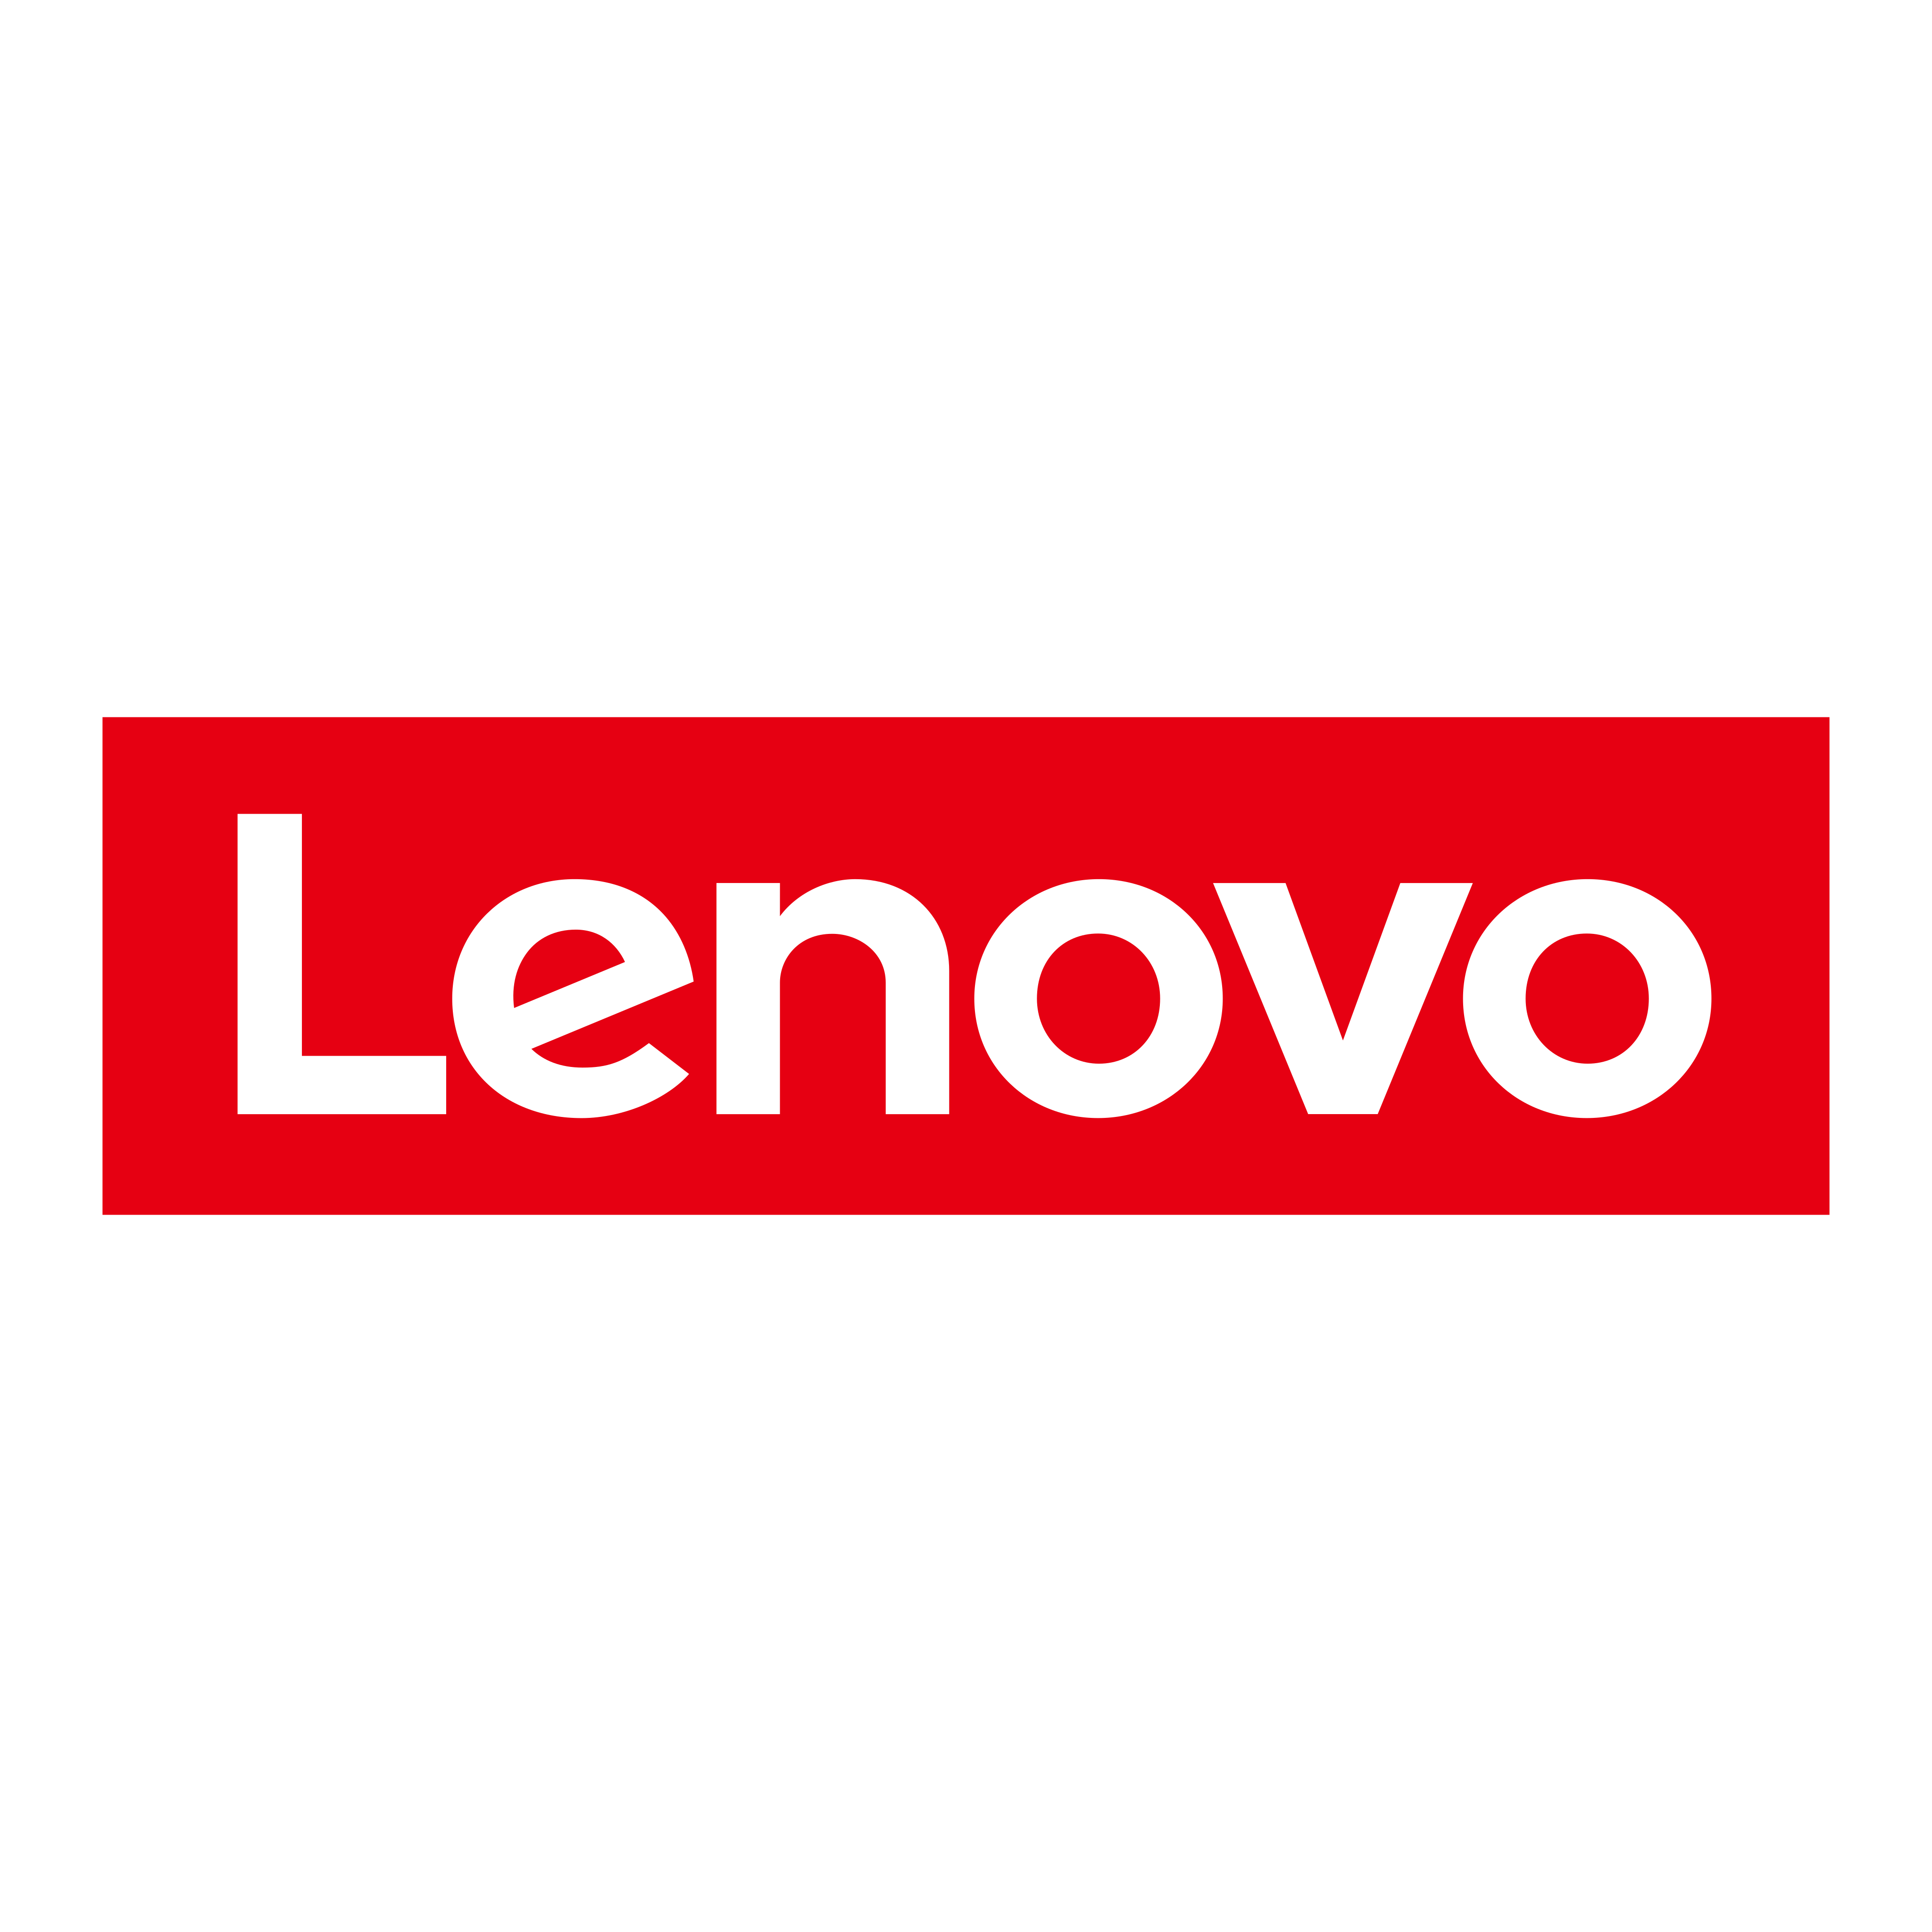 lenovo logo 0 - Lenovo Logo